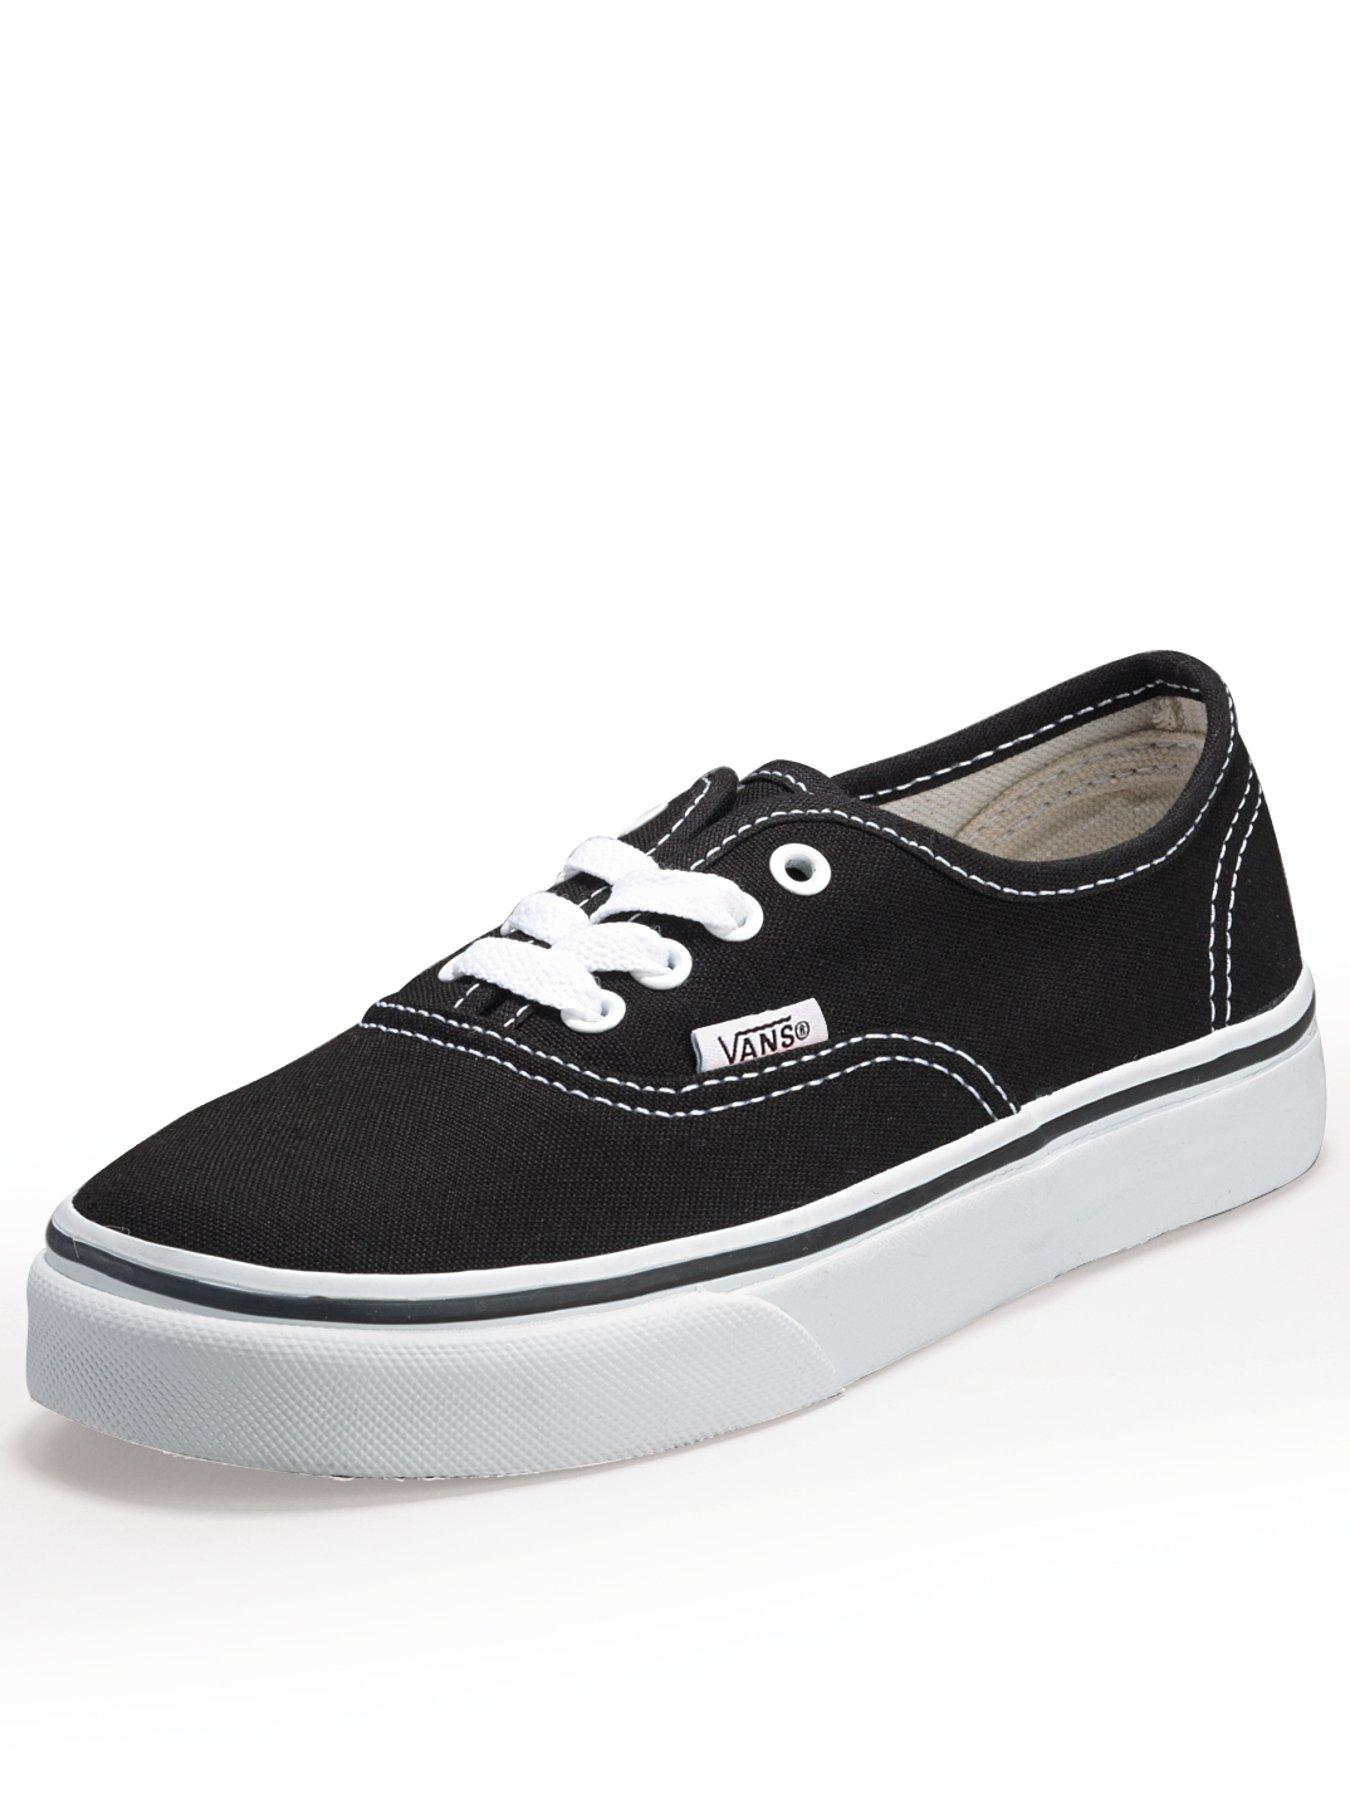 Vans | Junior footwear (sizes 3-6 